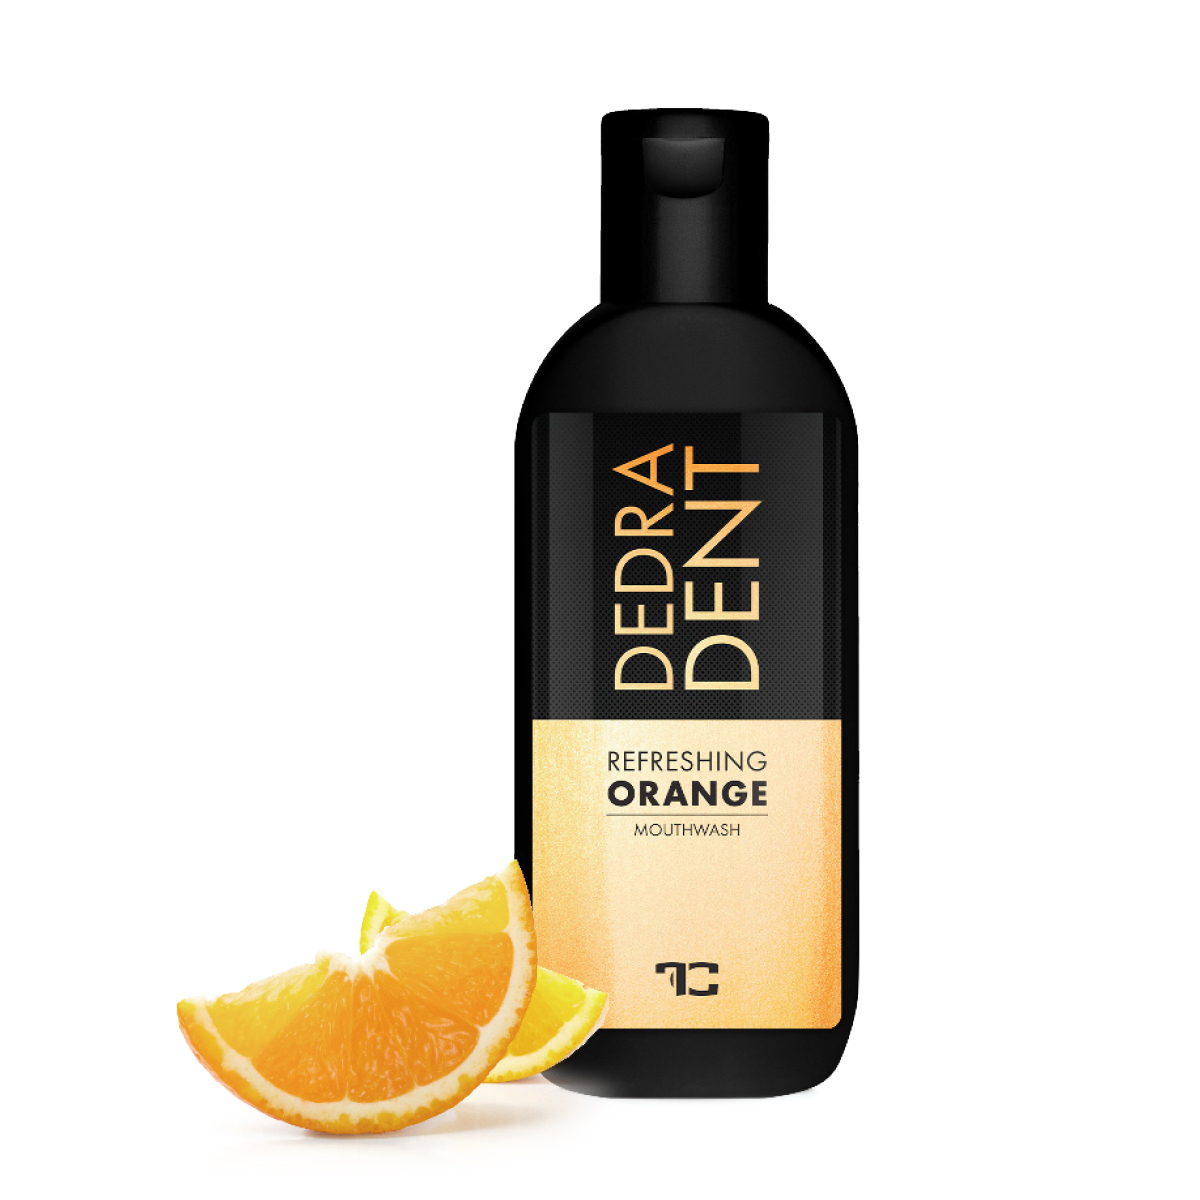 Přírodní ústní voda s příchutí pomeranče, Refreshing orange 100 ml